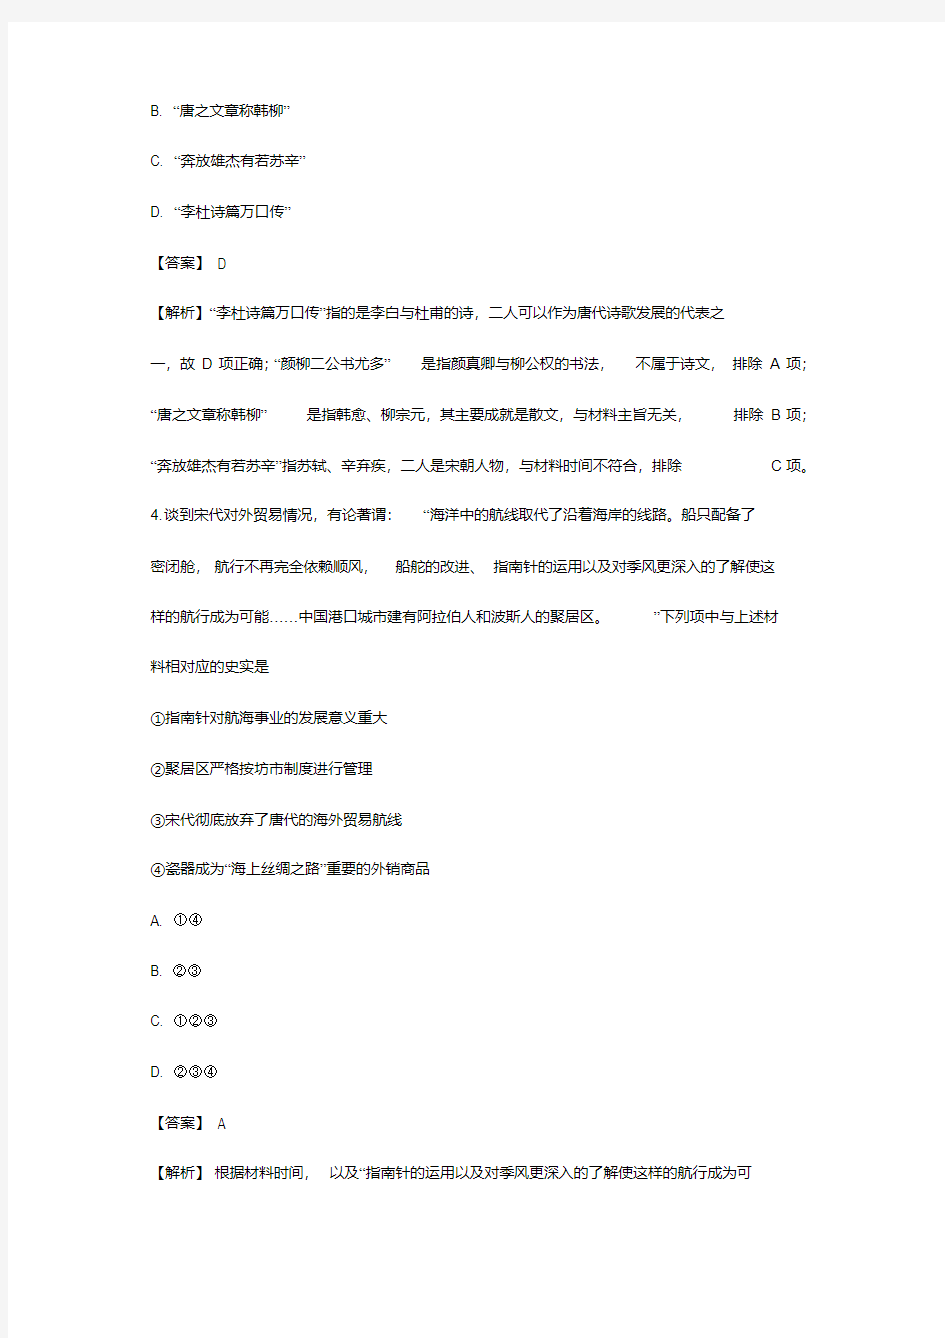 2019年浙江高考历史试题解析(选考科目).pdf